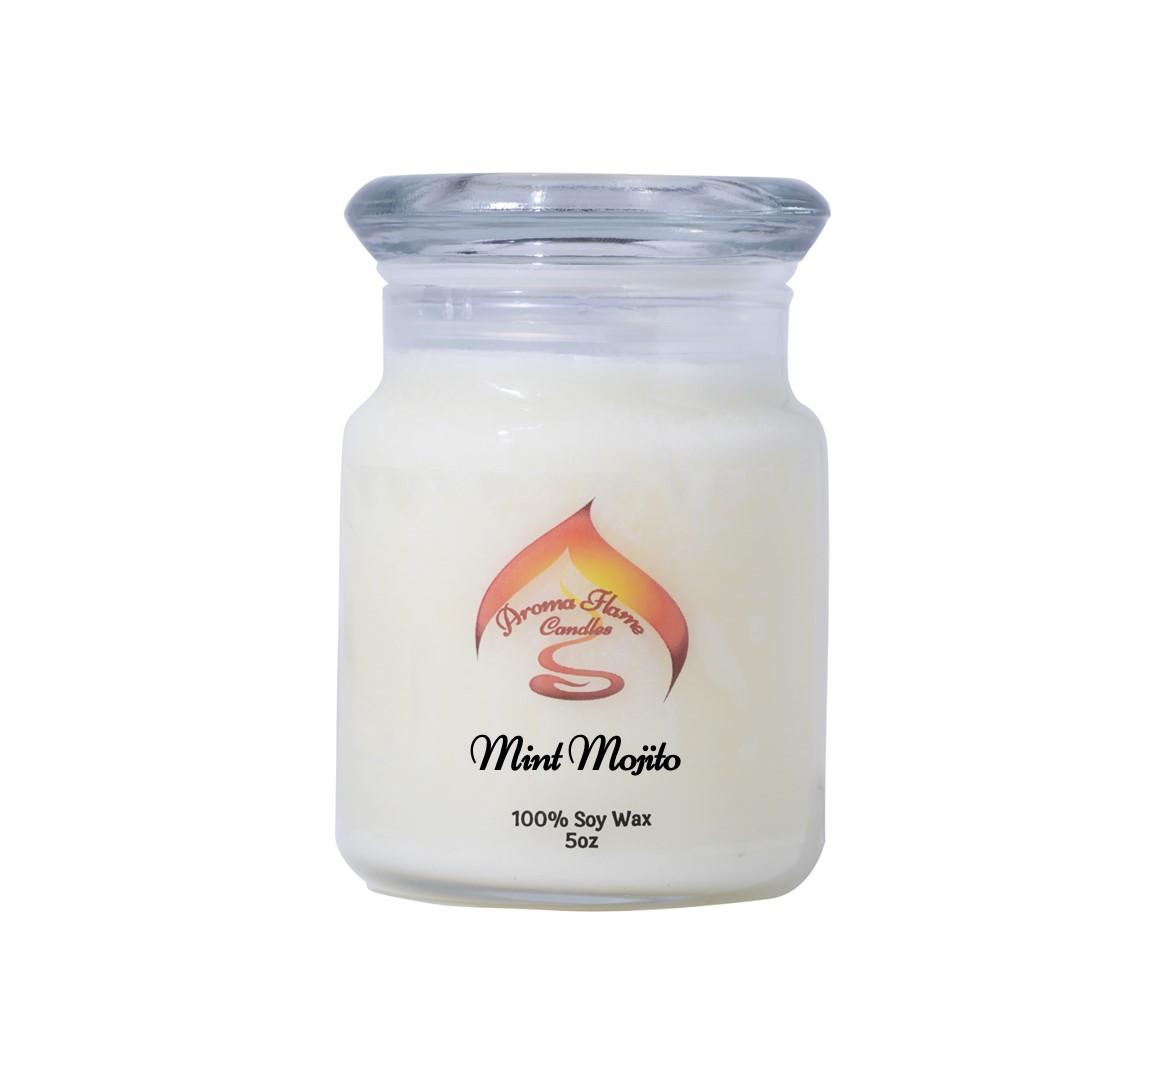 Parfum EPHA® - Mojito (10ml) – EPHA® candle